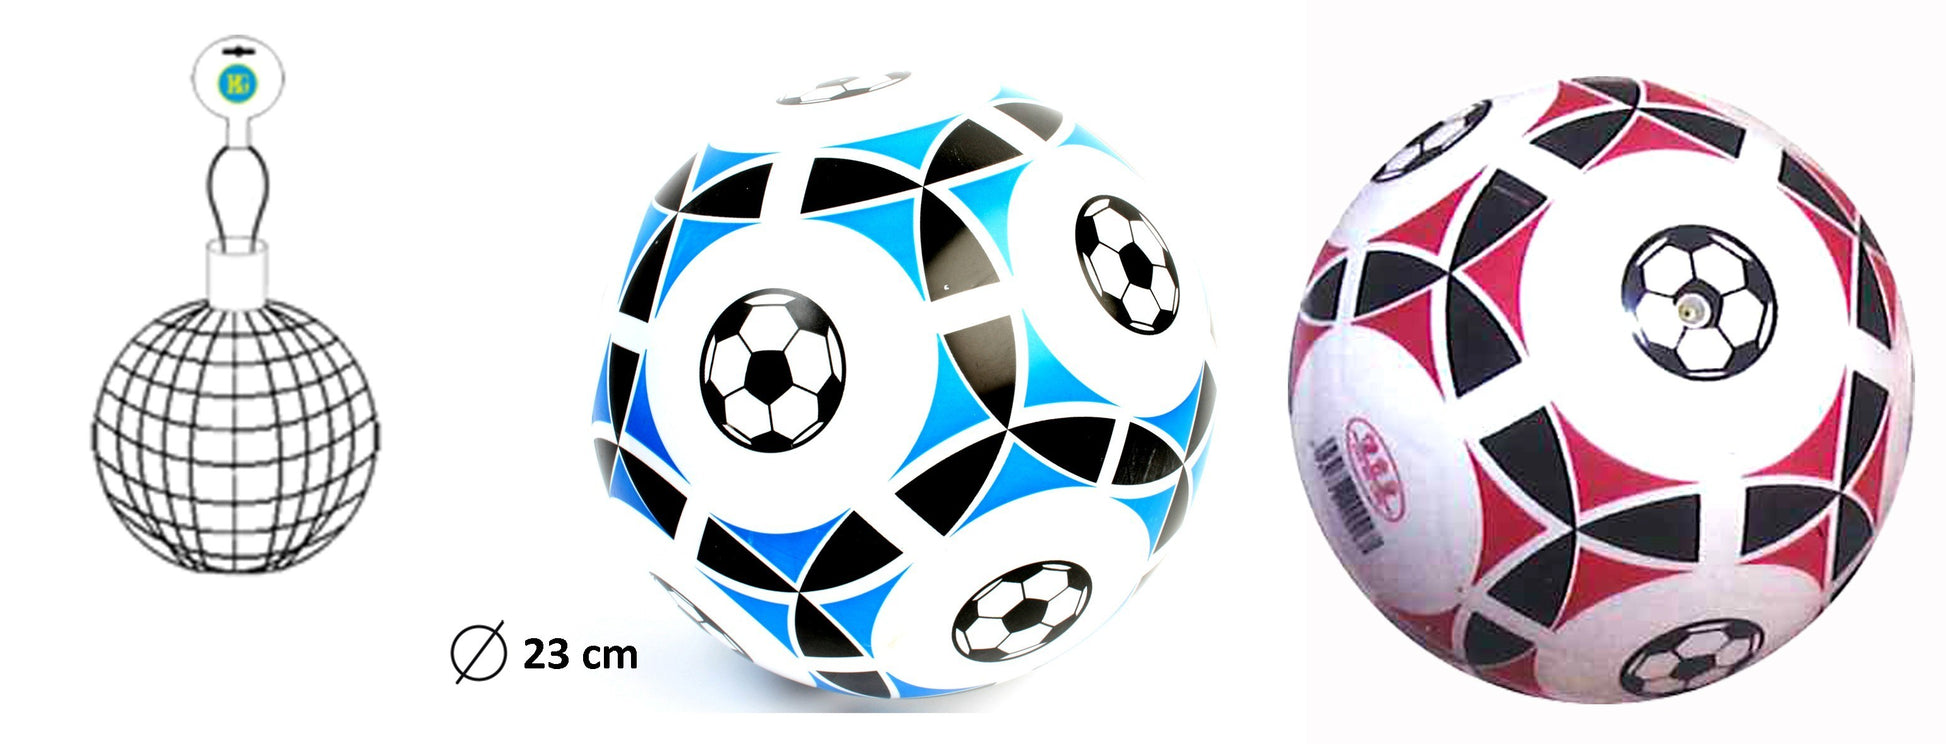 Ballon de foot en plastique pour enfant - Grossiste jouet